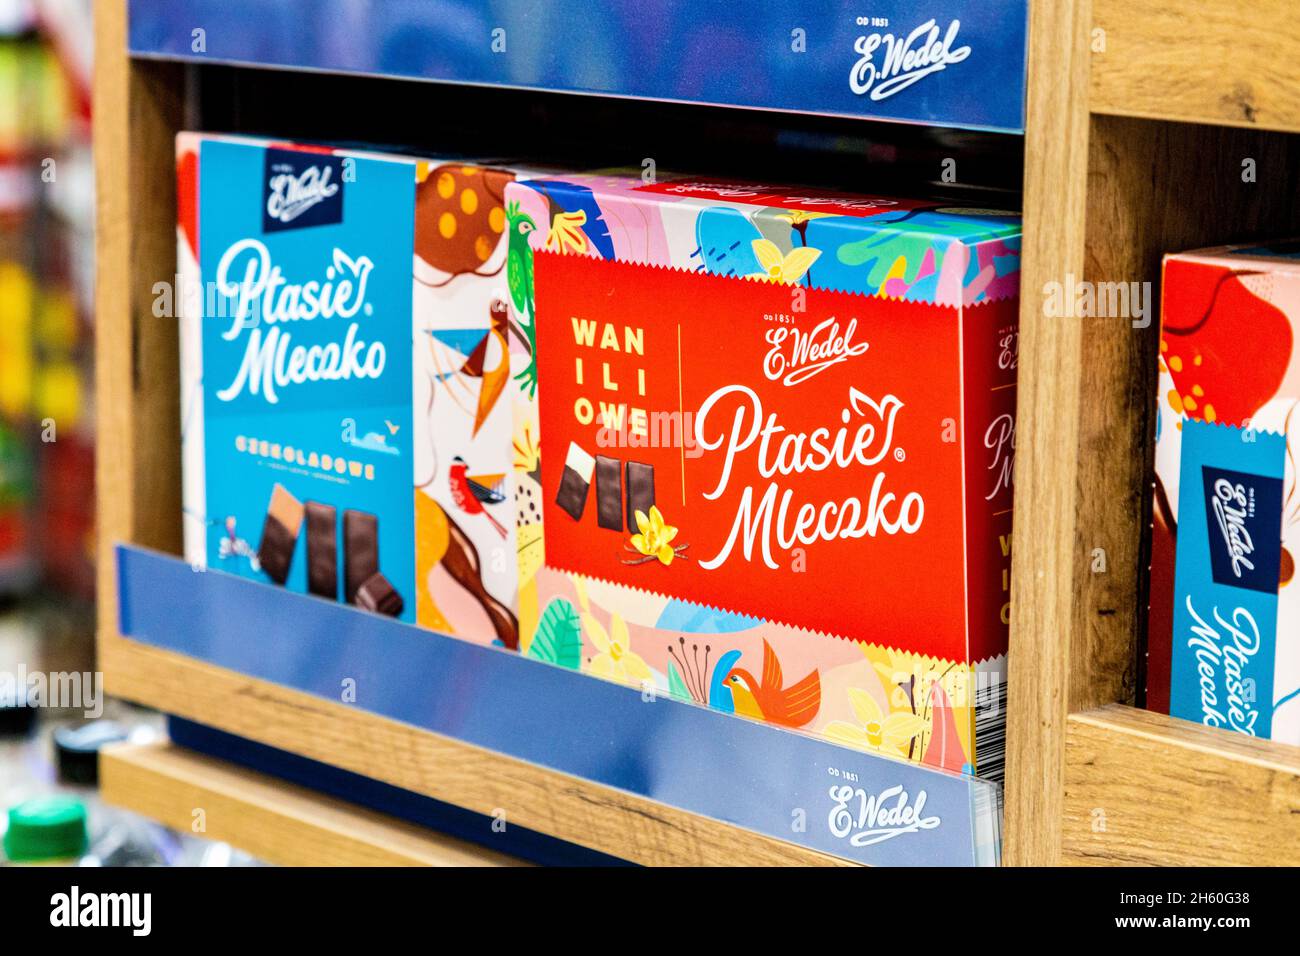 Traditional polish chocolates Ptasie Mleczko on a supermarket shelf Stock Photo